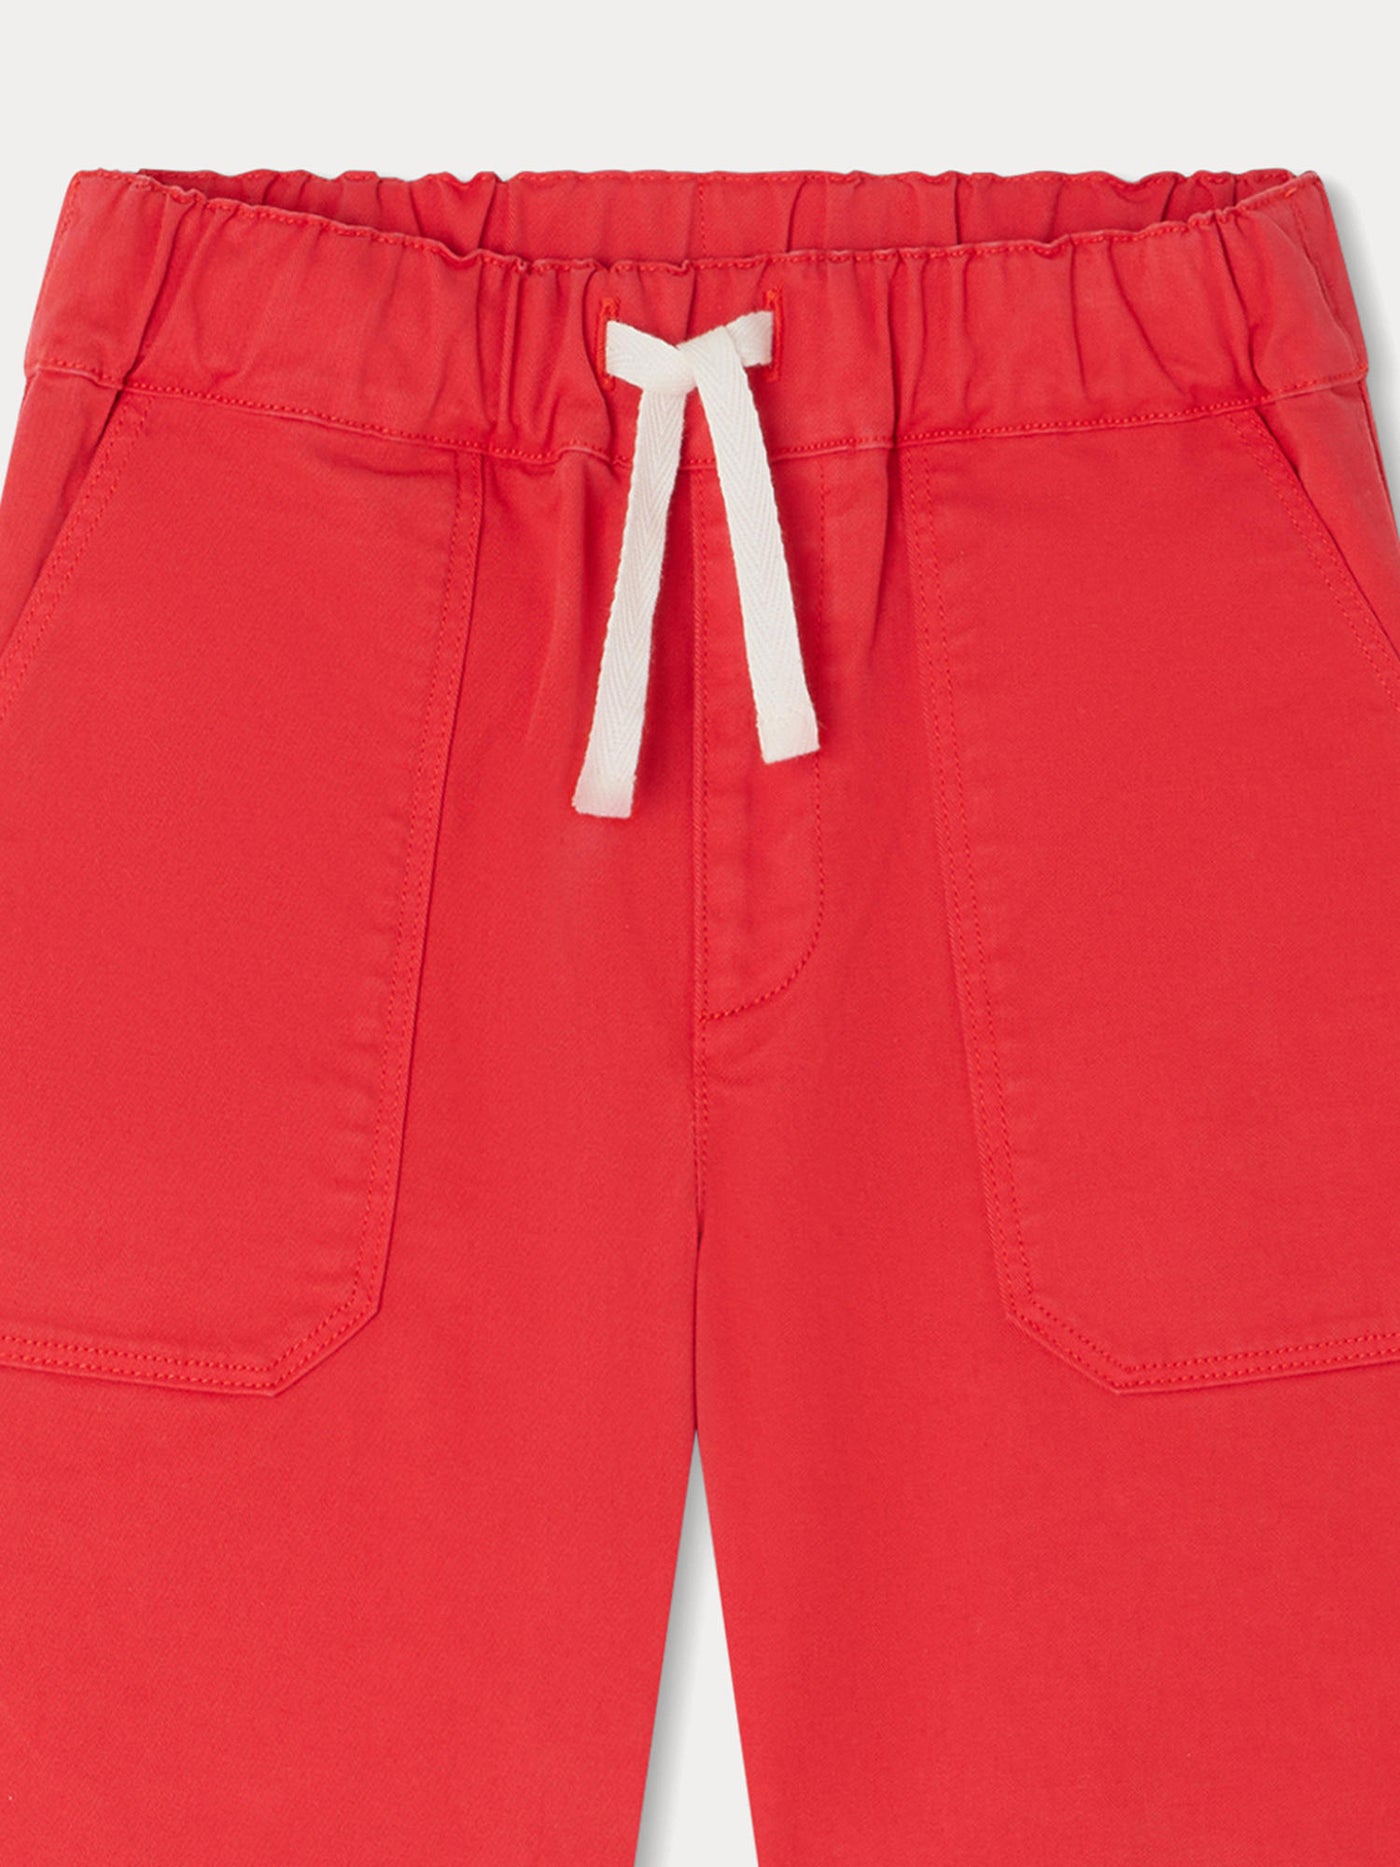 Syl Bermuda Shorts poppy red